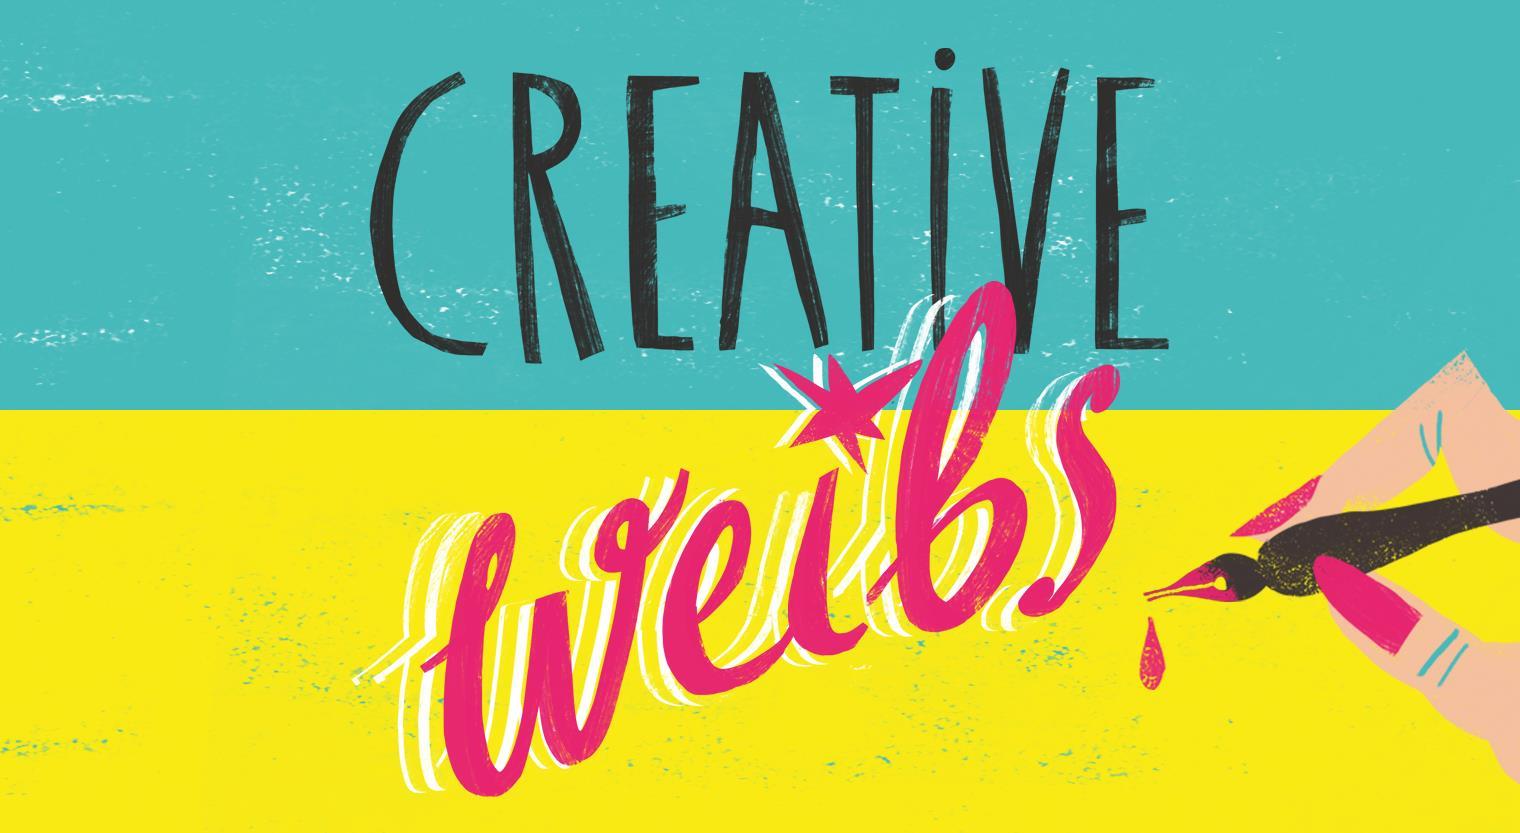 Creative Weibs  - Kreative Frauen an den Start